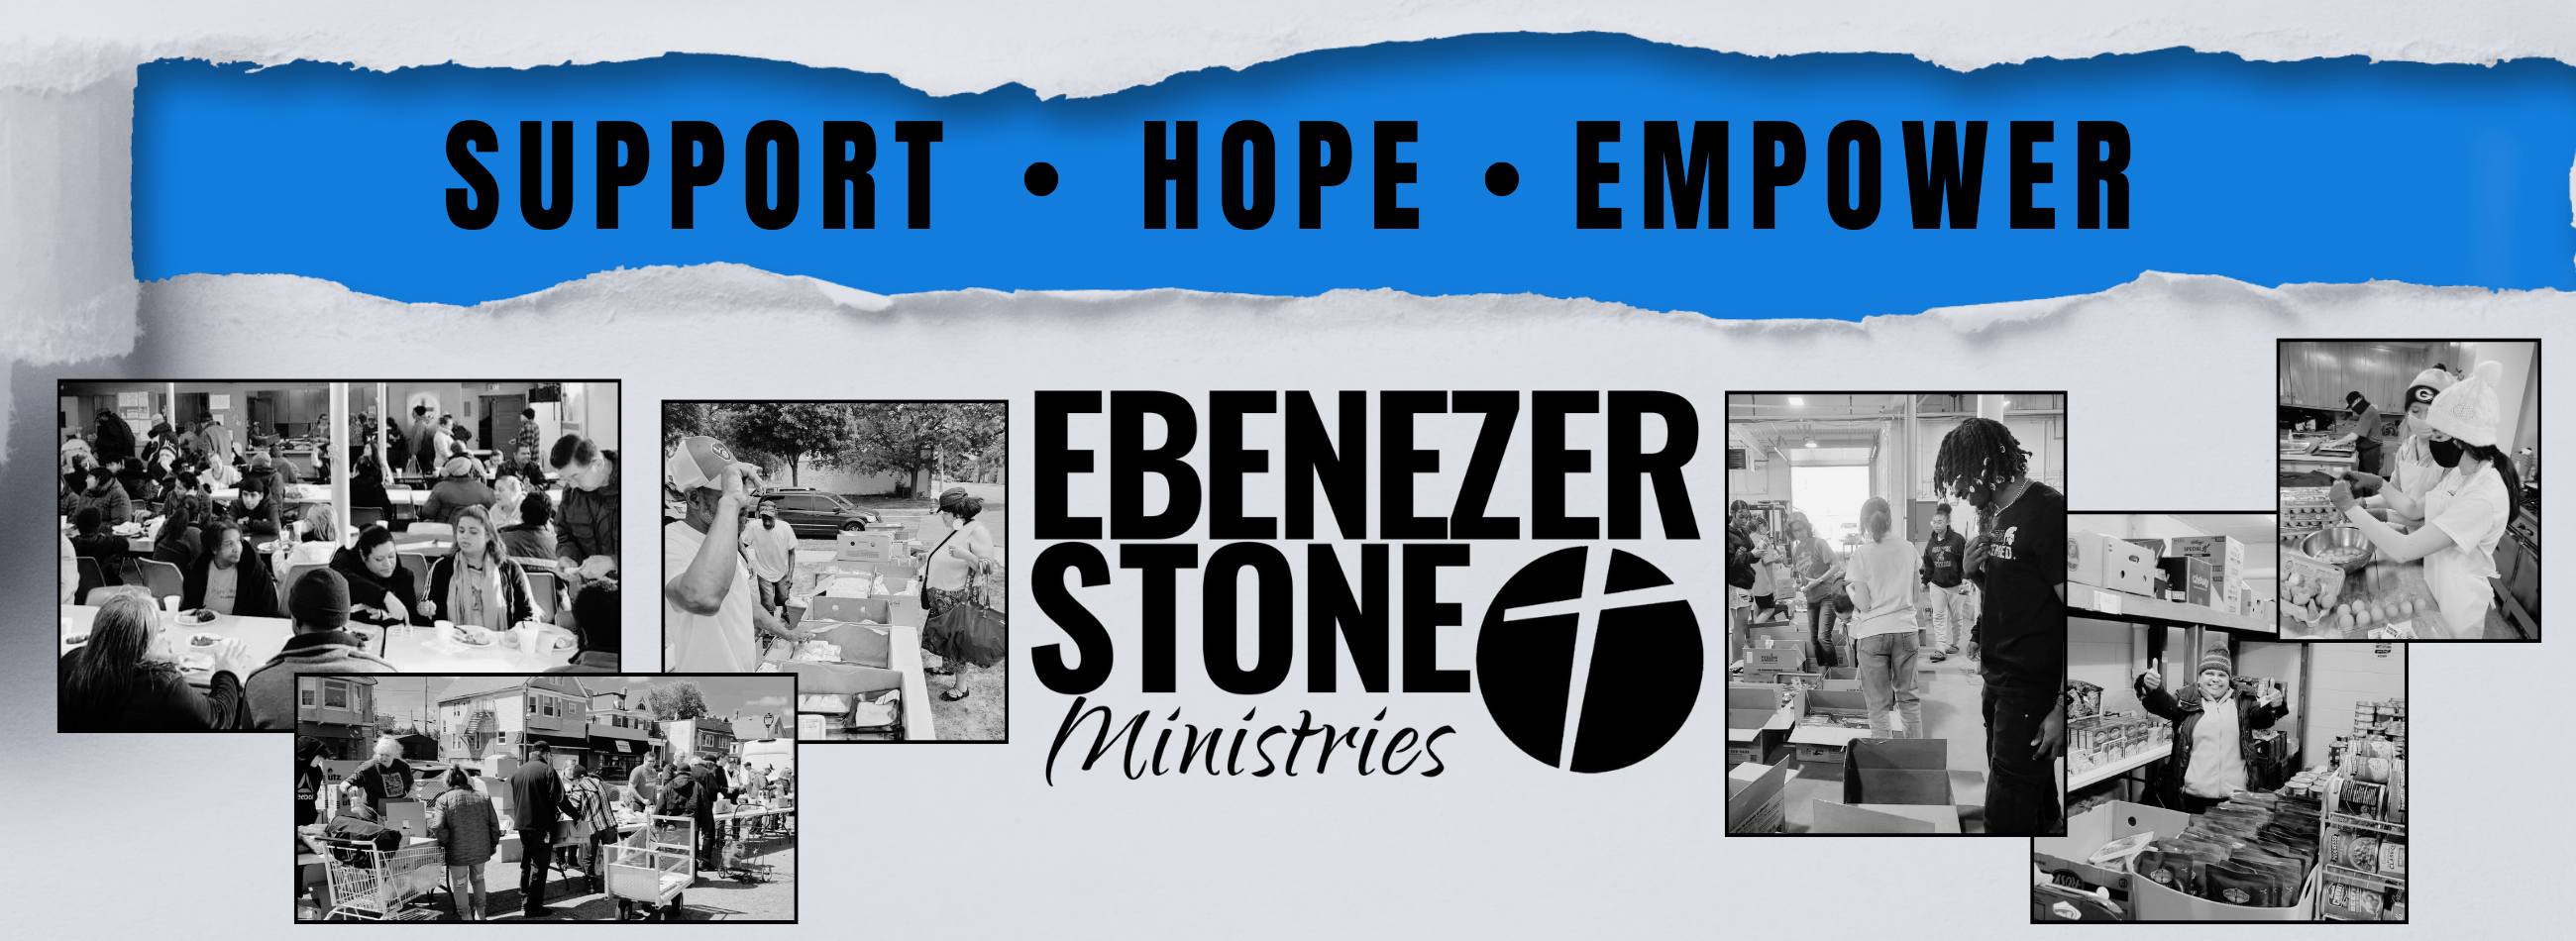 Ebenezer Stone Support Hope Empower